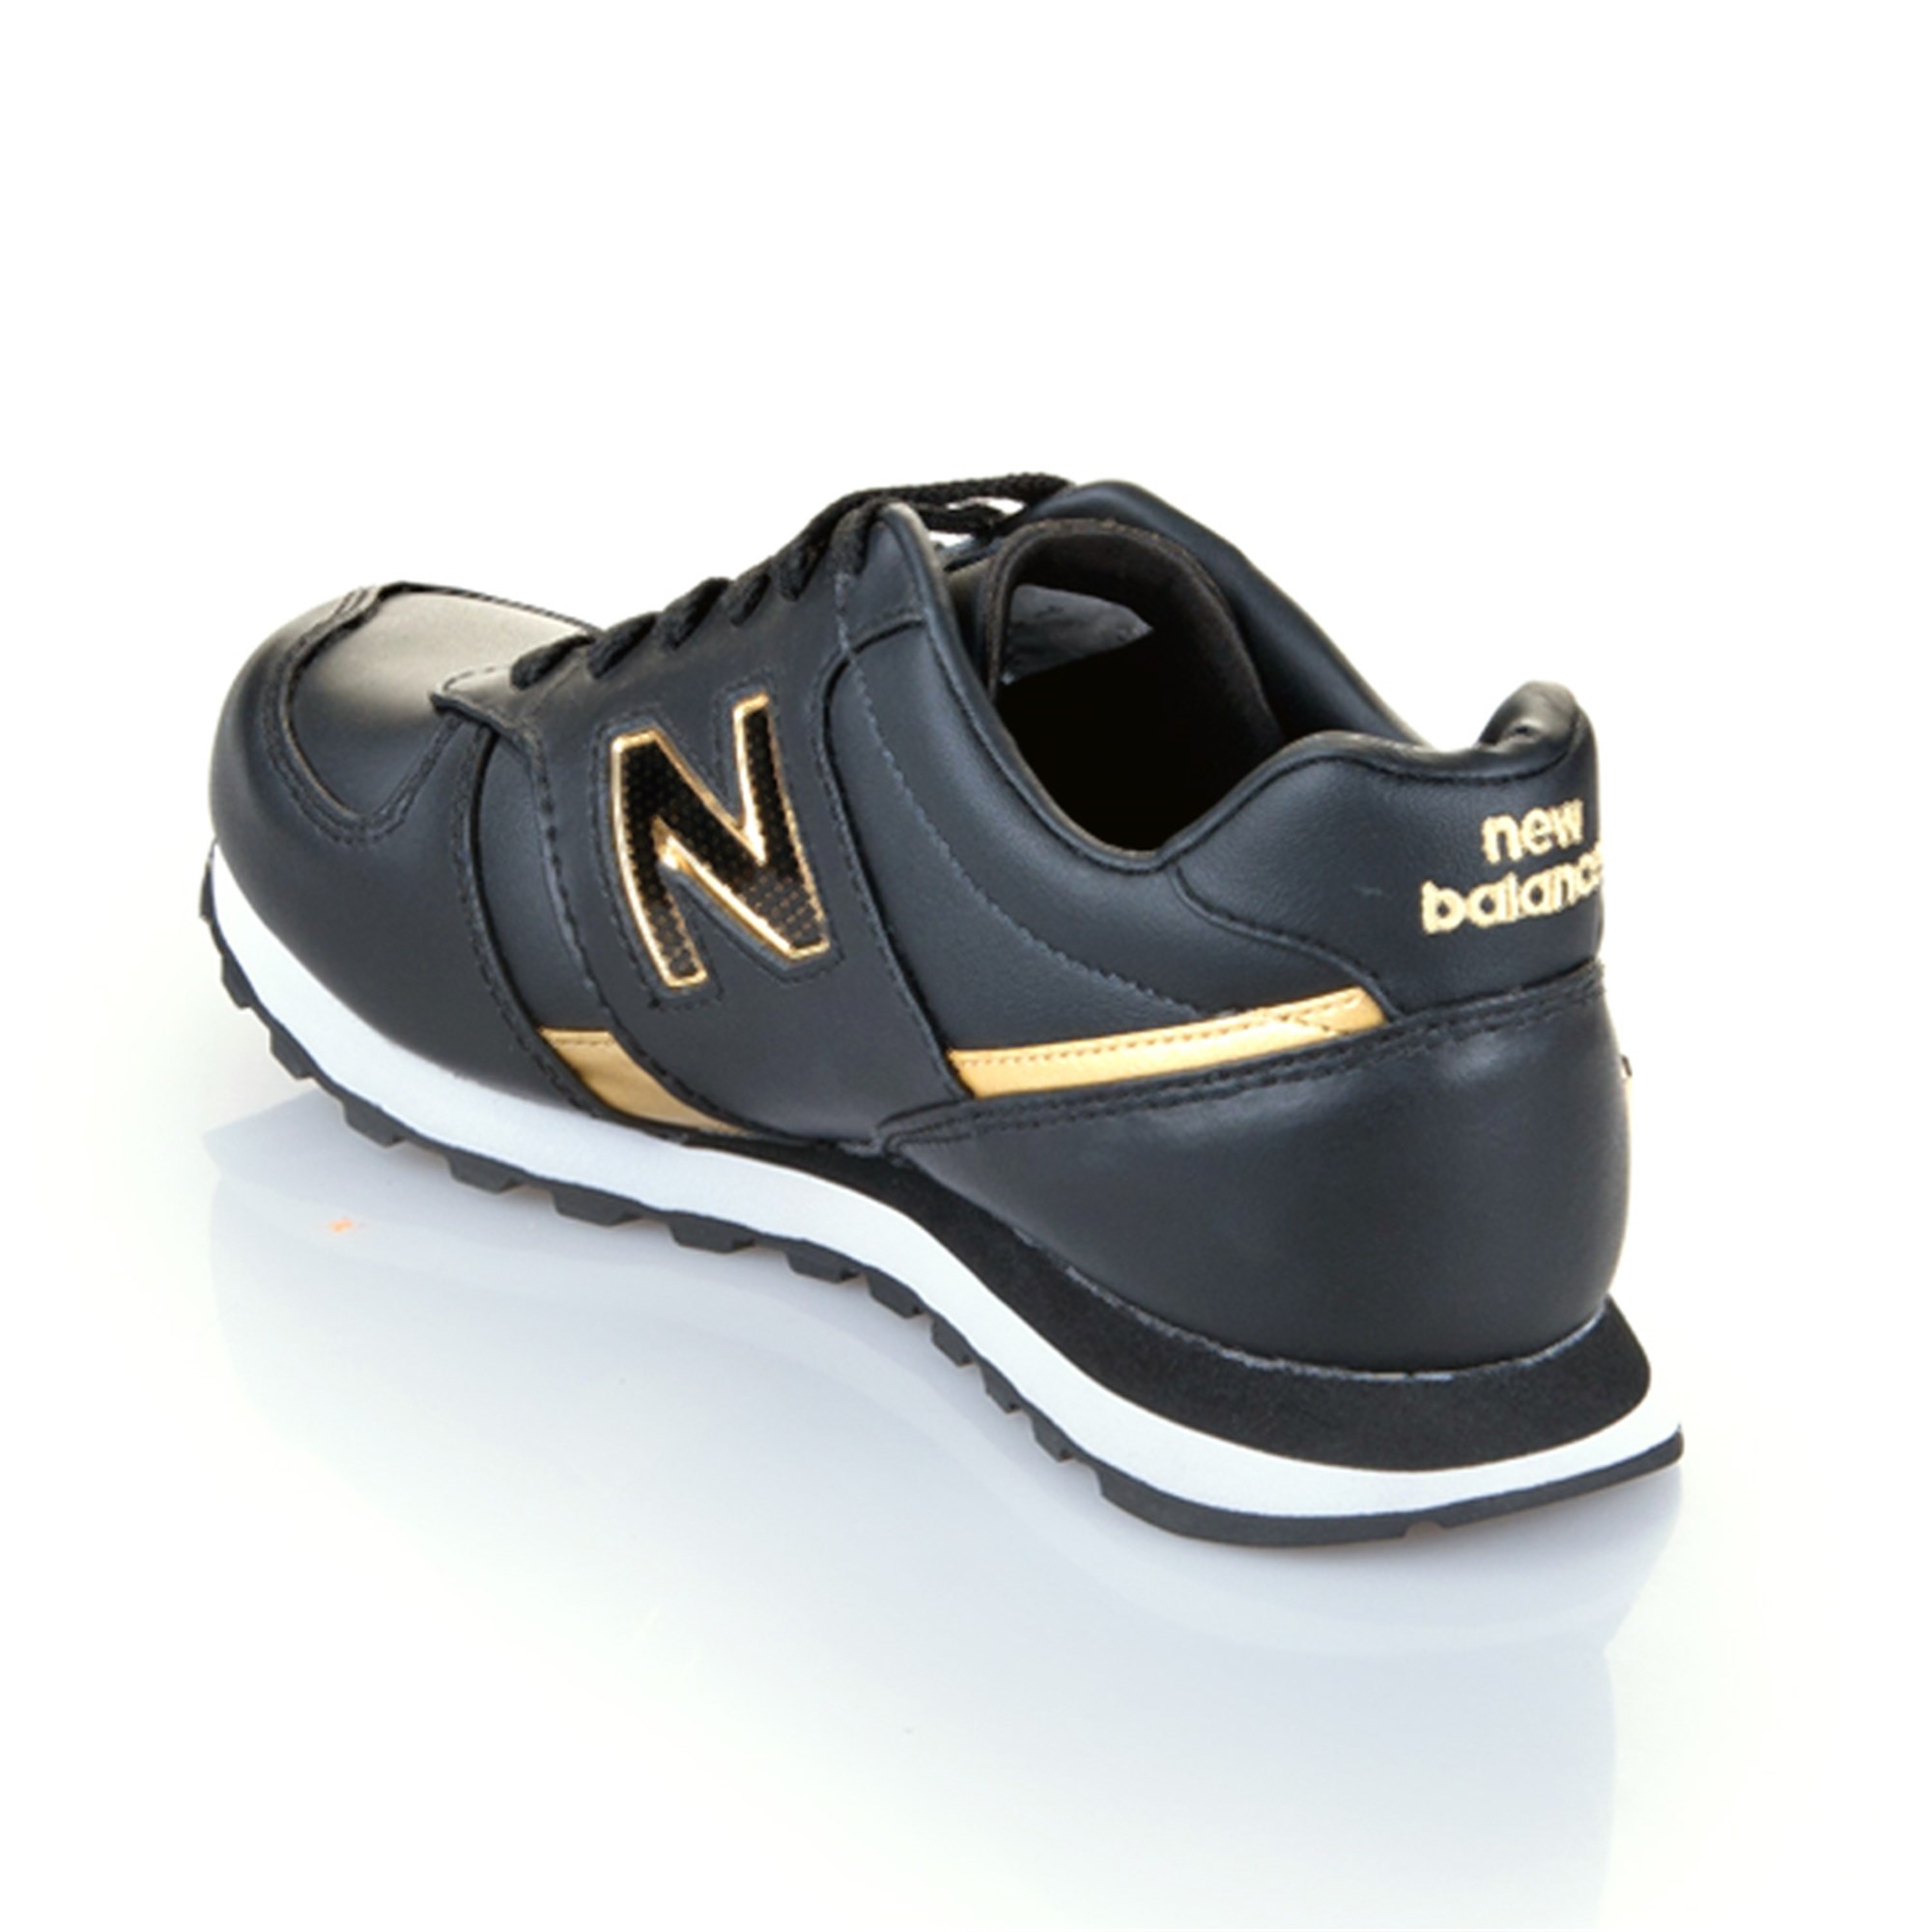 New Balance W554BGW Bayan Spor Ayakkabı Ürün kodu: 554BGW | Etichet Sport